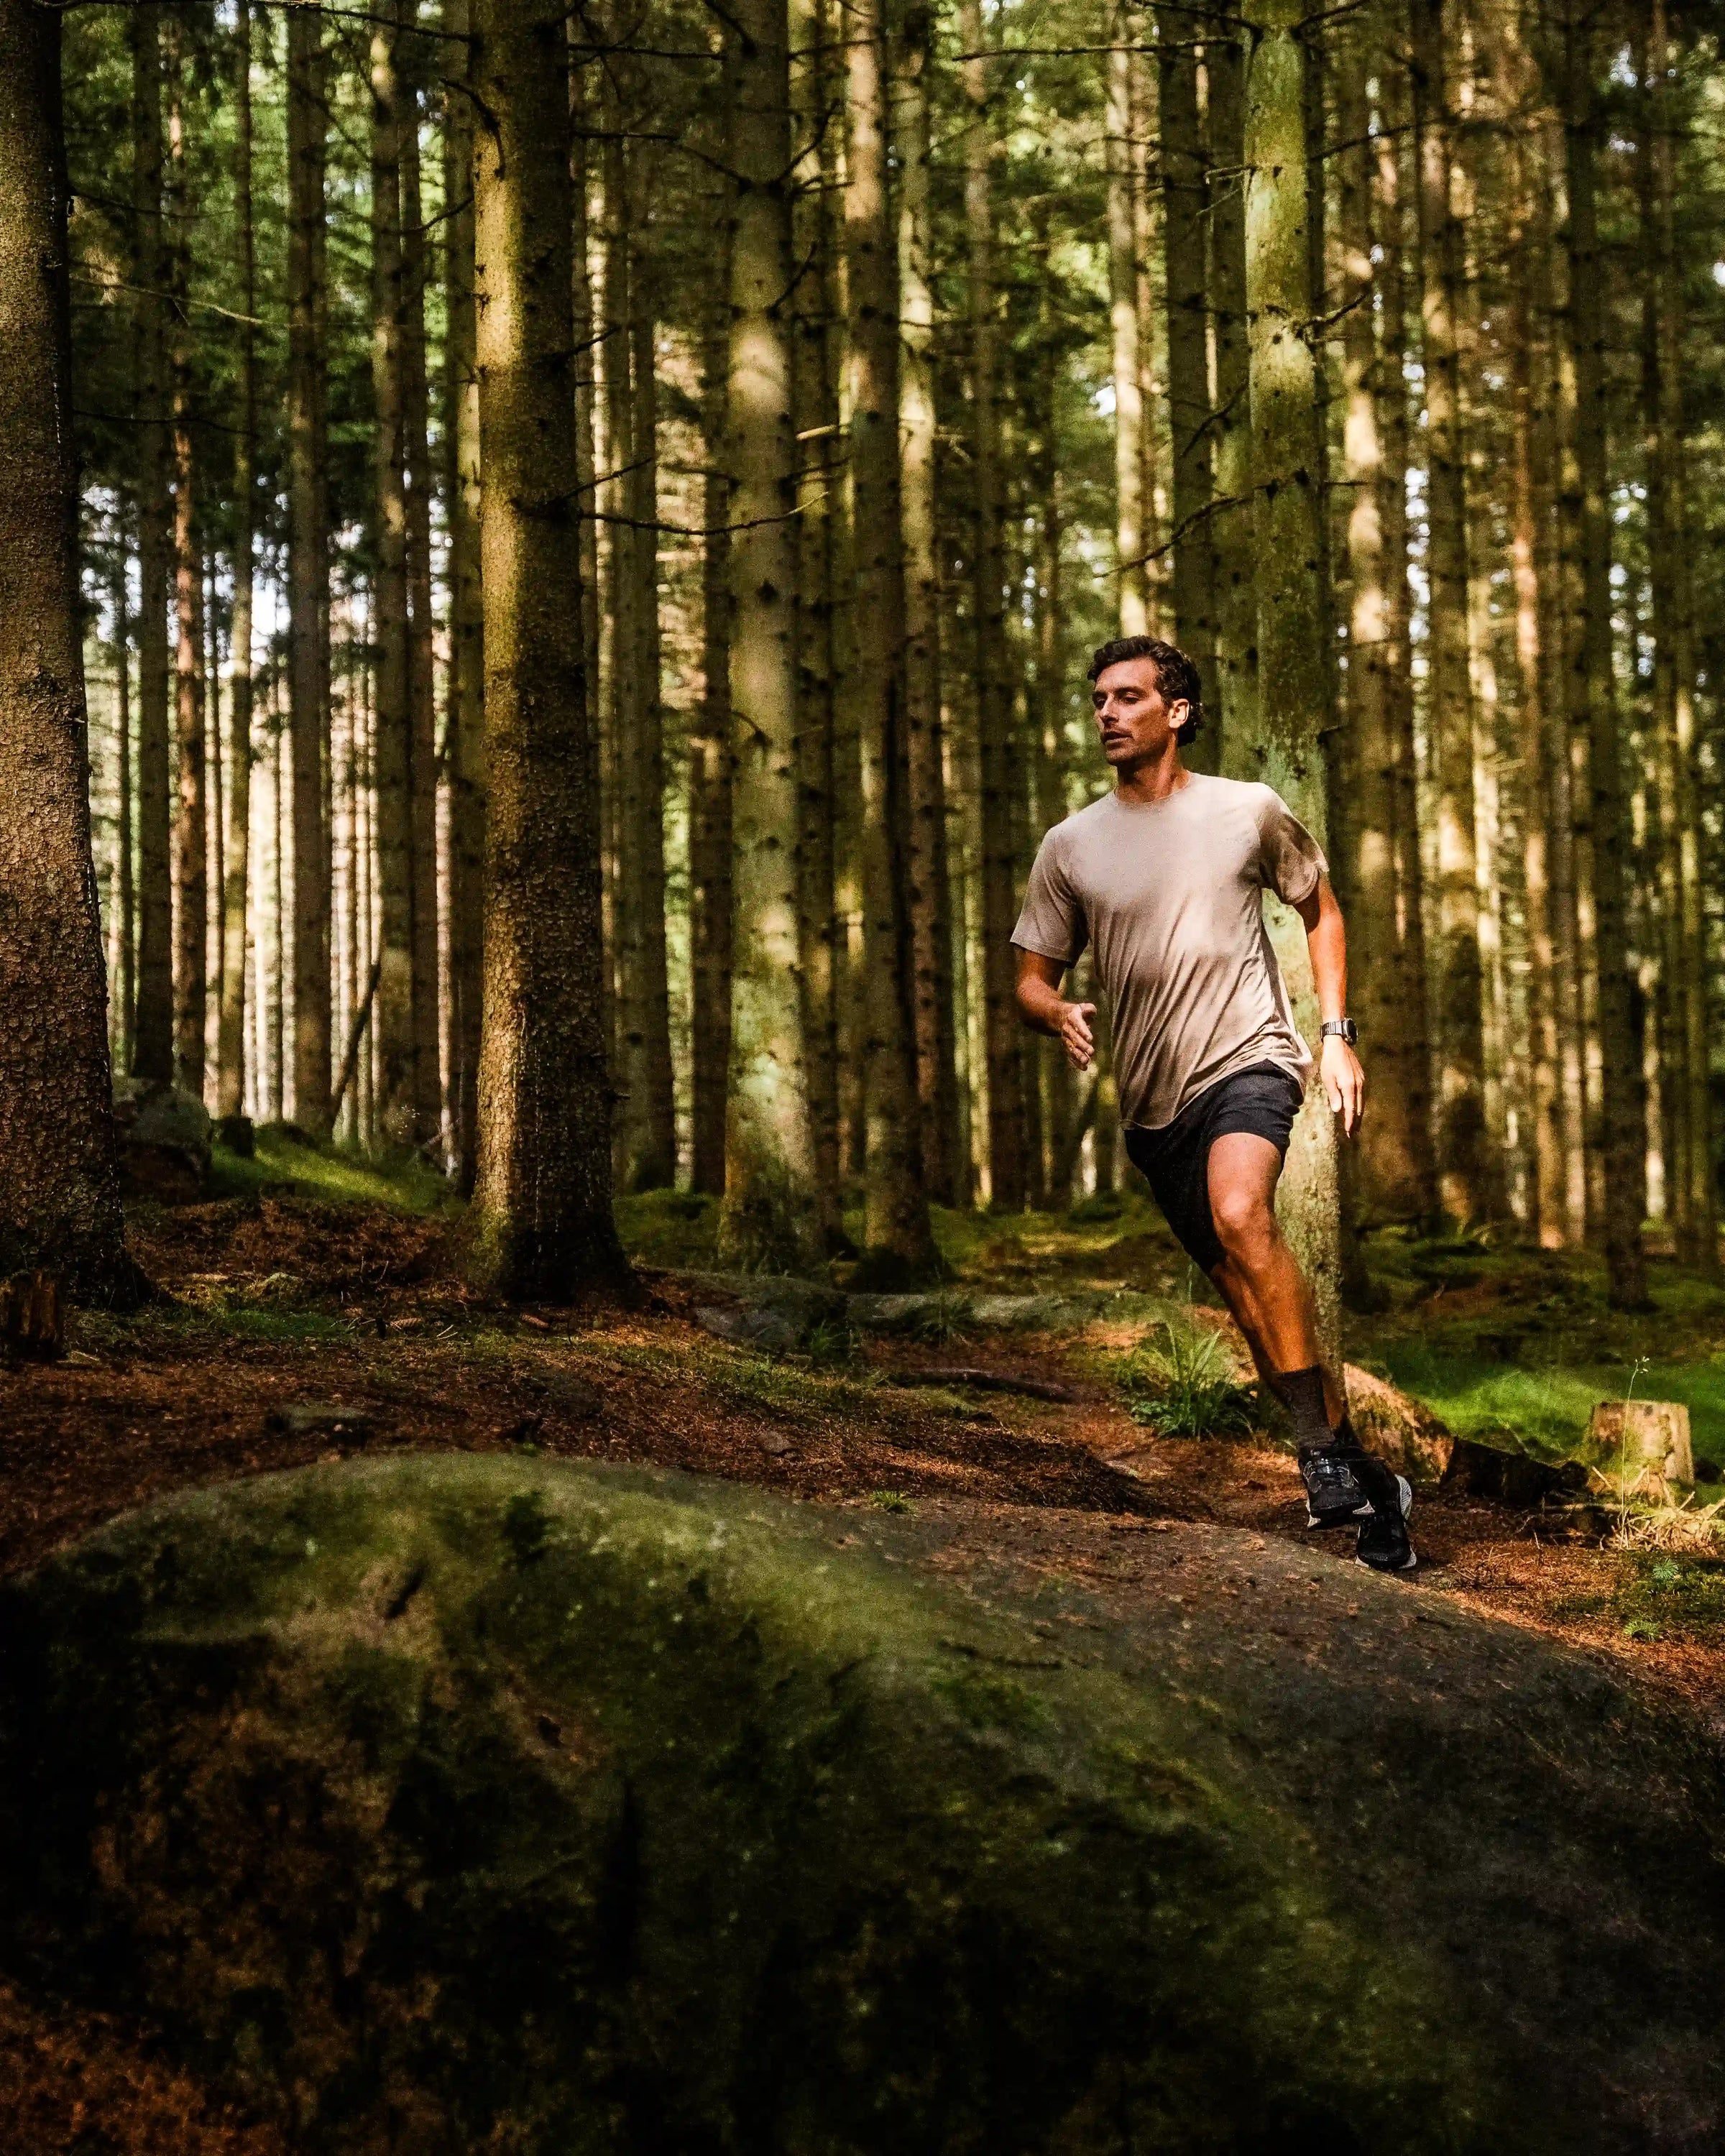 Man løber gennem skoven i en sand-farvet t-shirt